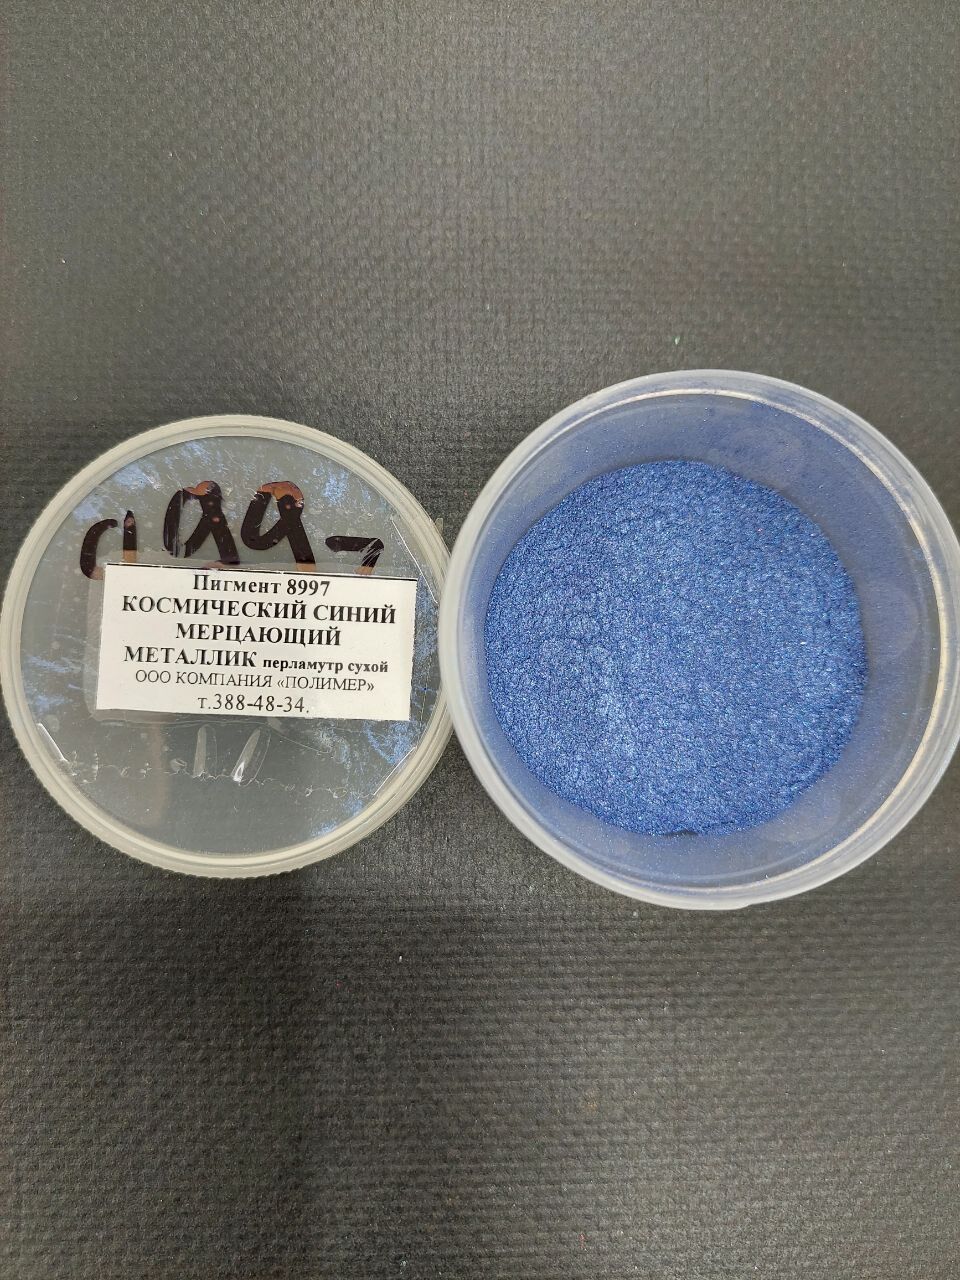 Пигмент 8997 космический синий мерцающий металлик перламутр сухой